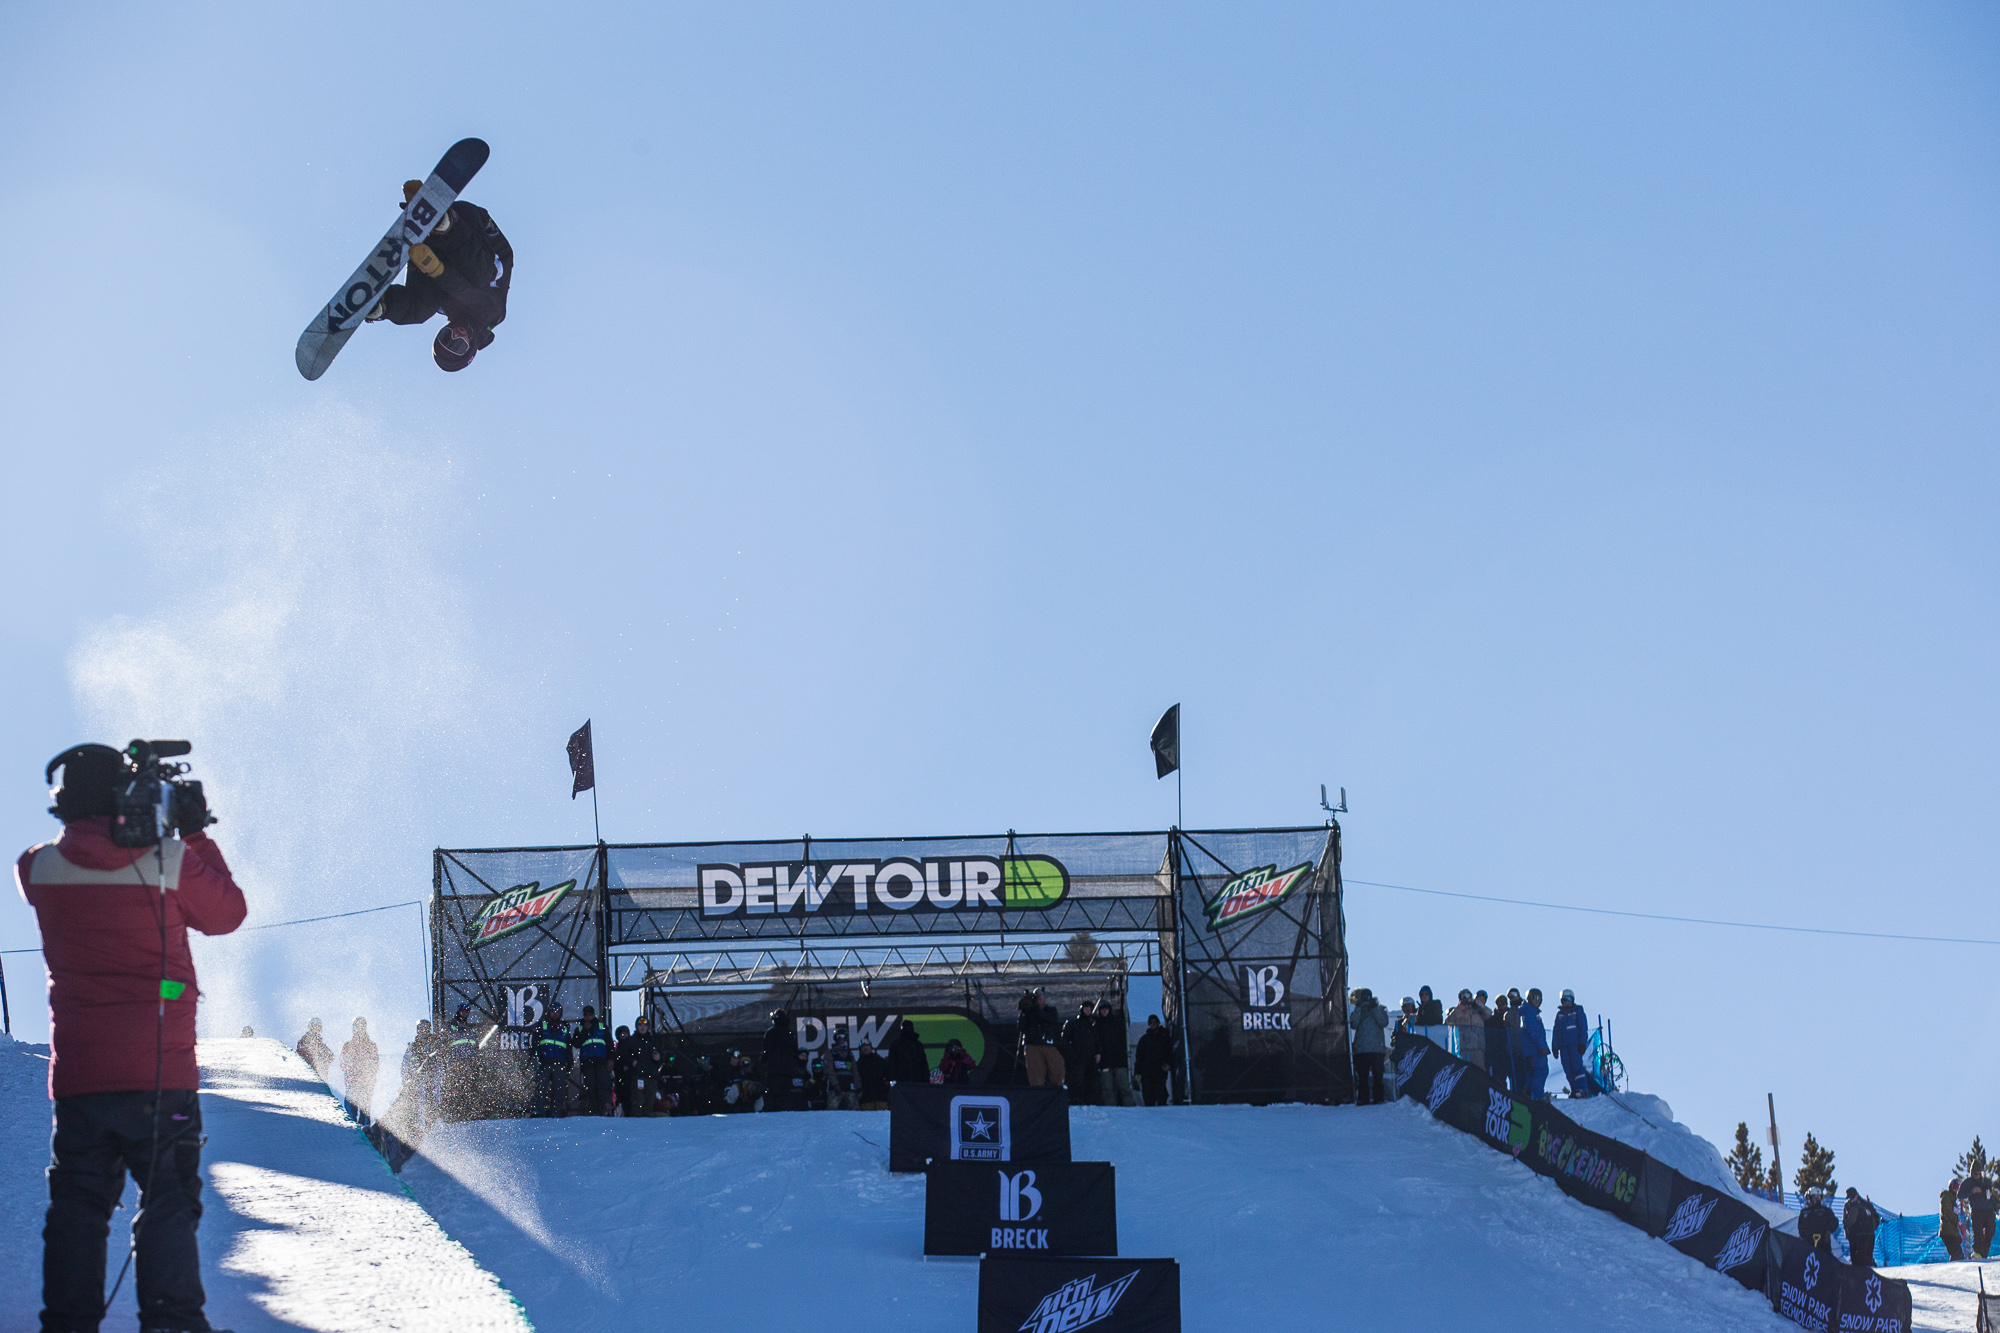 Danny_davis_dew_tour_breckenridge_mens_snowboard_superpipe_finals_kanights_02